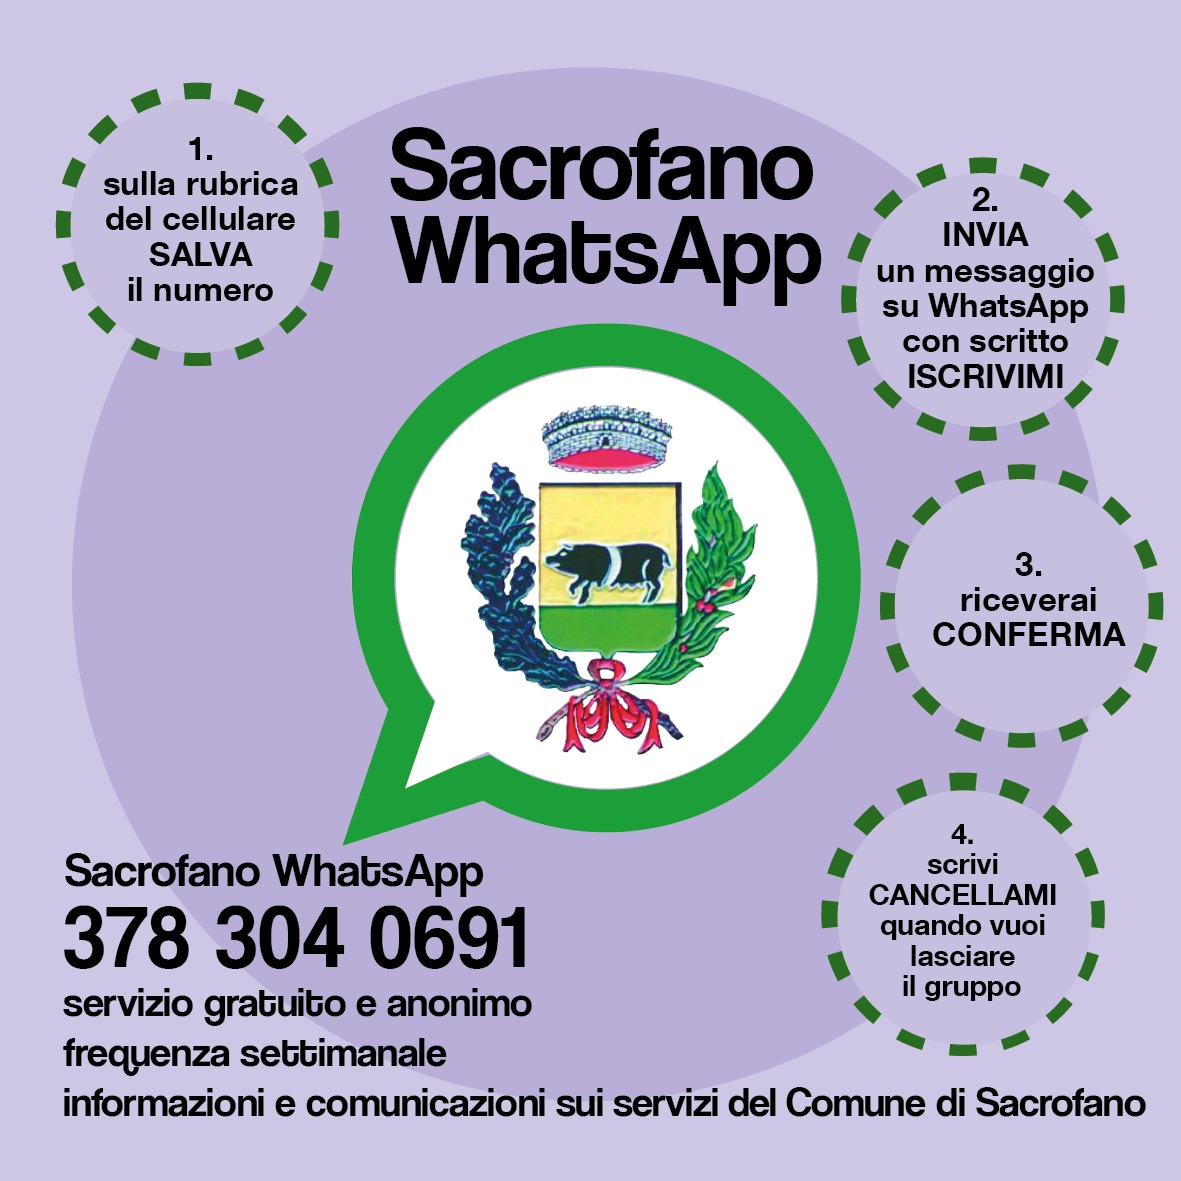 Iscriviti al nostro canale Sacrofano WhatsApp!